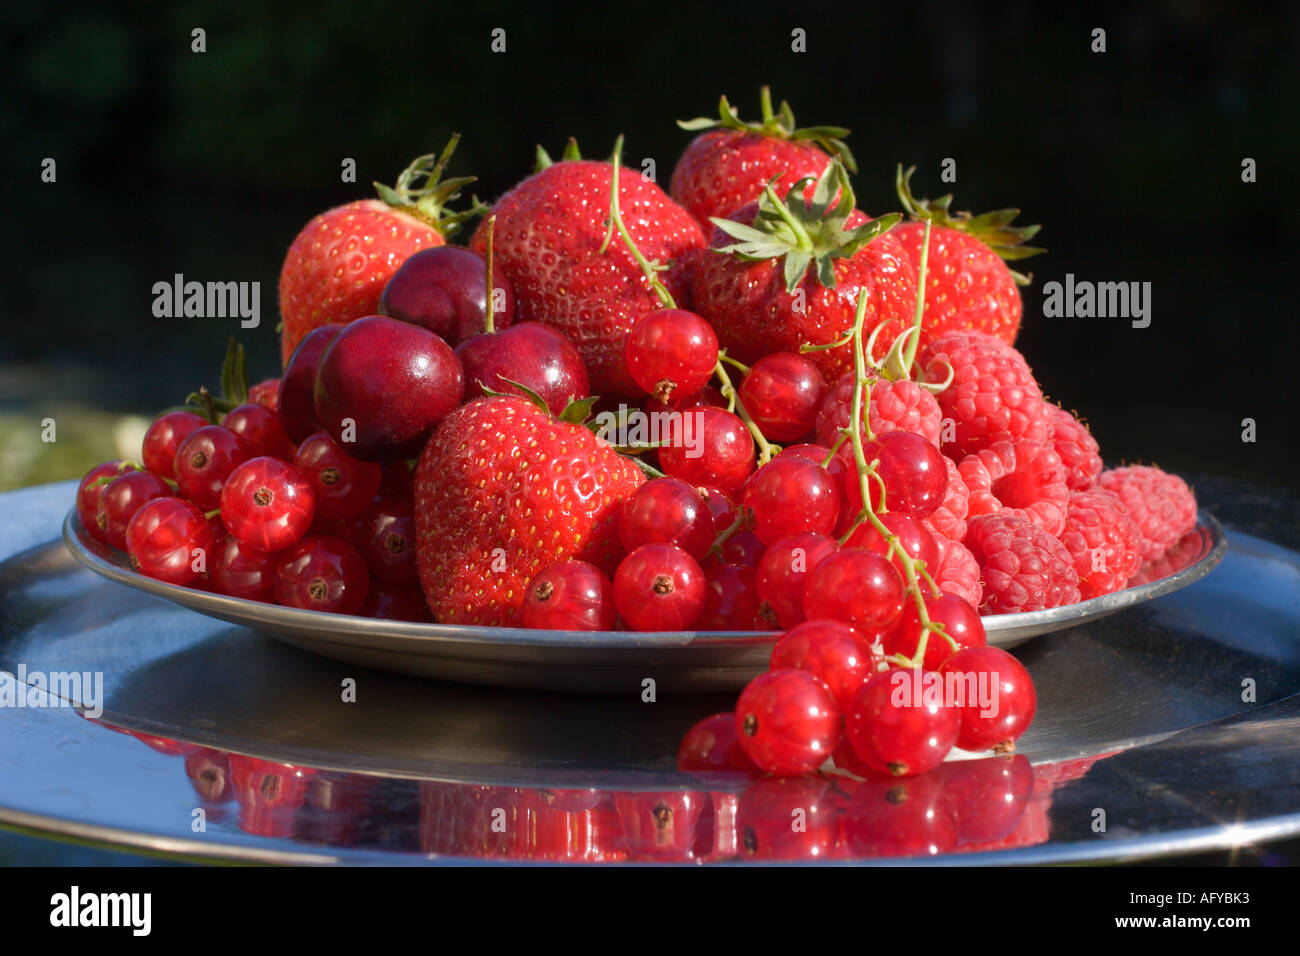 Platte mit roten Sommer Früchte Erdbeeren, rote Johannisbeeren Kirschen Himbeeren UK Stockfoto